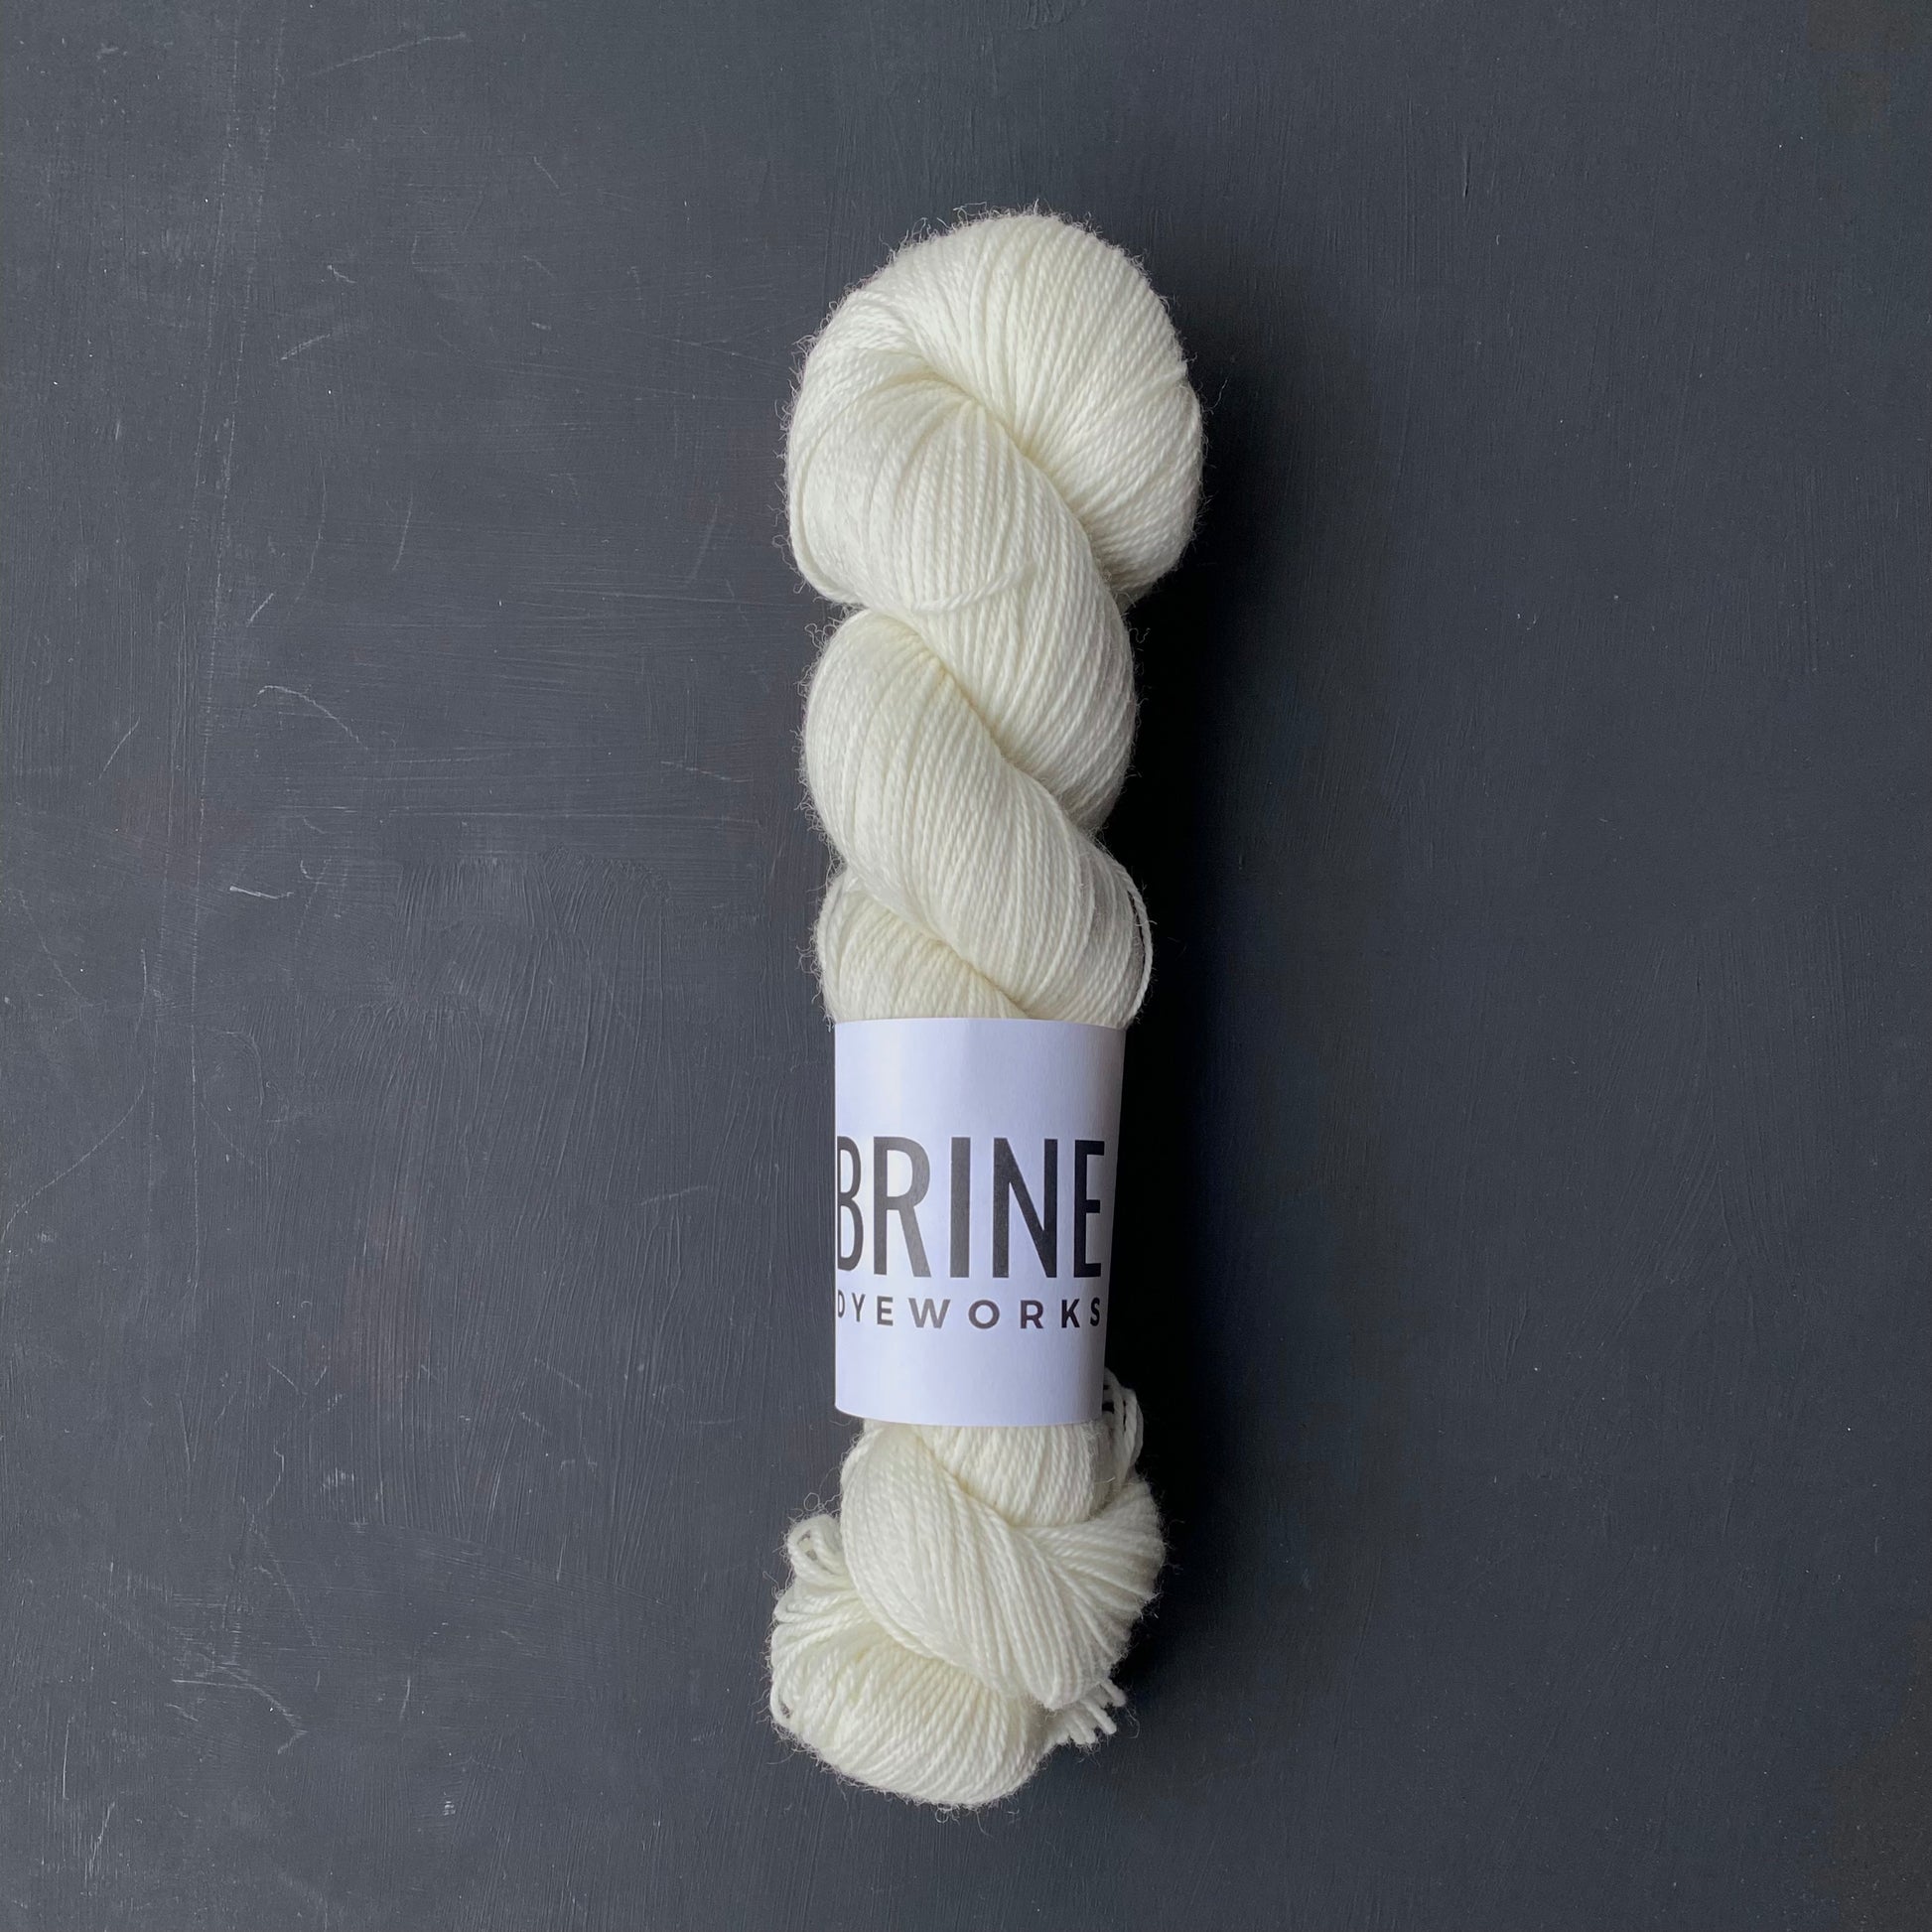 undyed yarn– Wool Maiden Handcrafted Fibre & Yarn